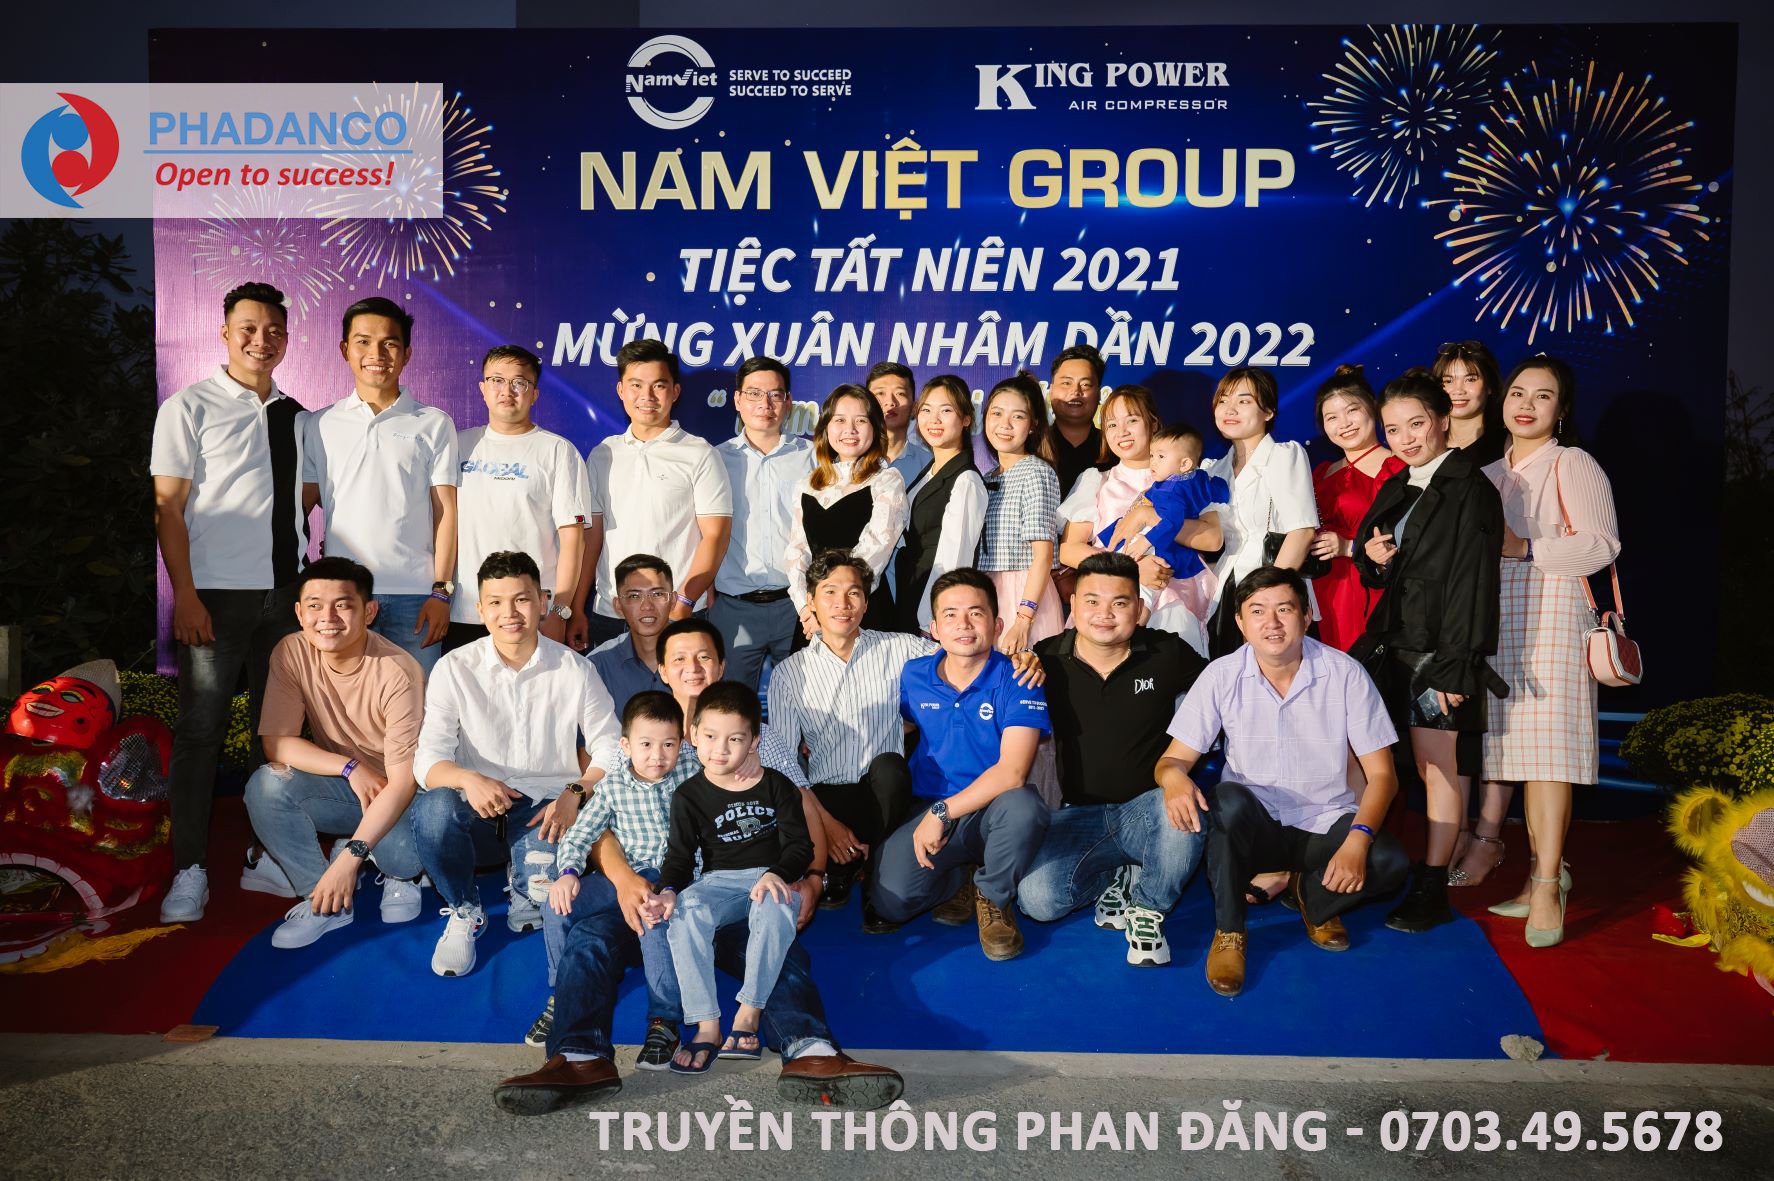 Gala dinner tiệc tất niên cho Nam Việt Group